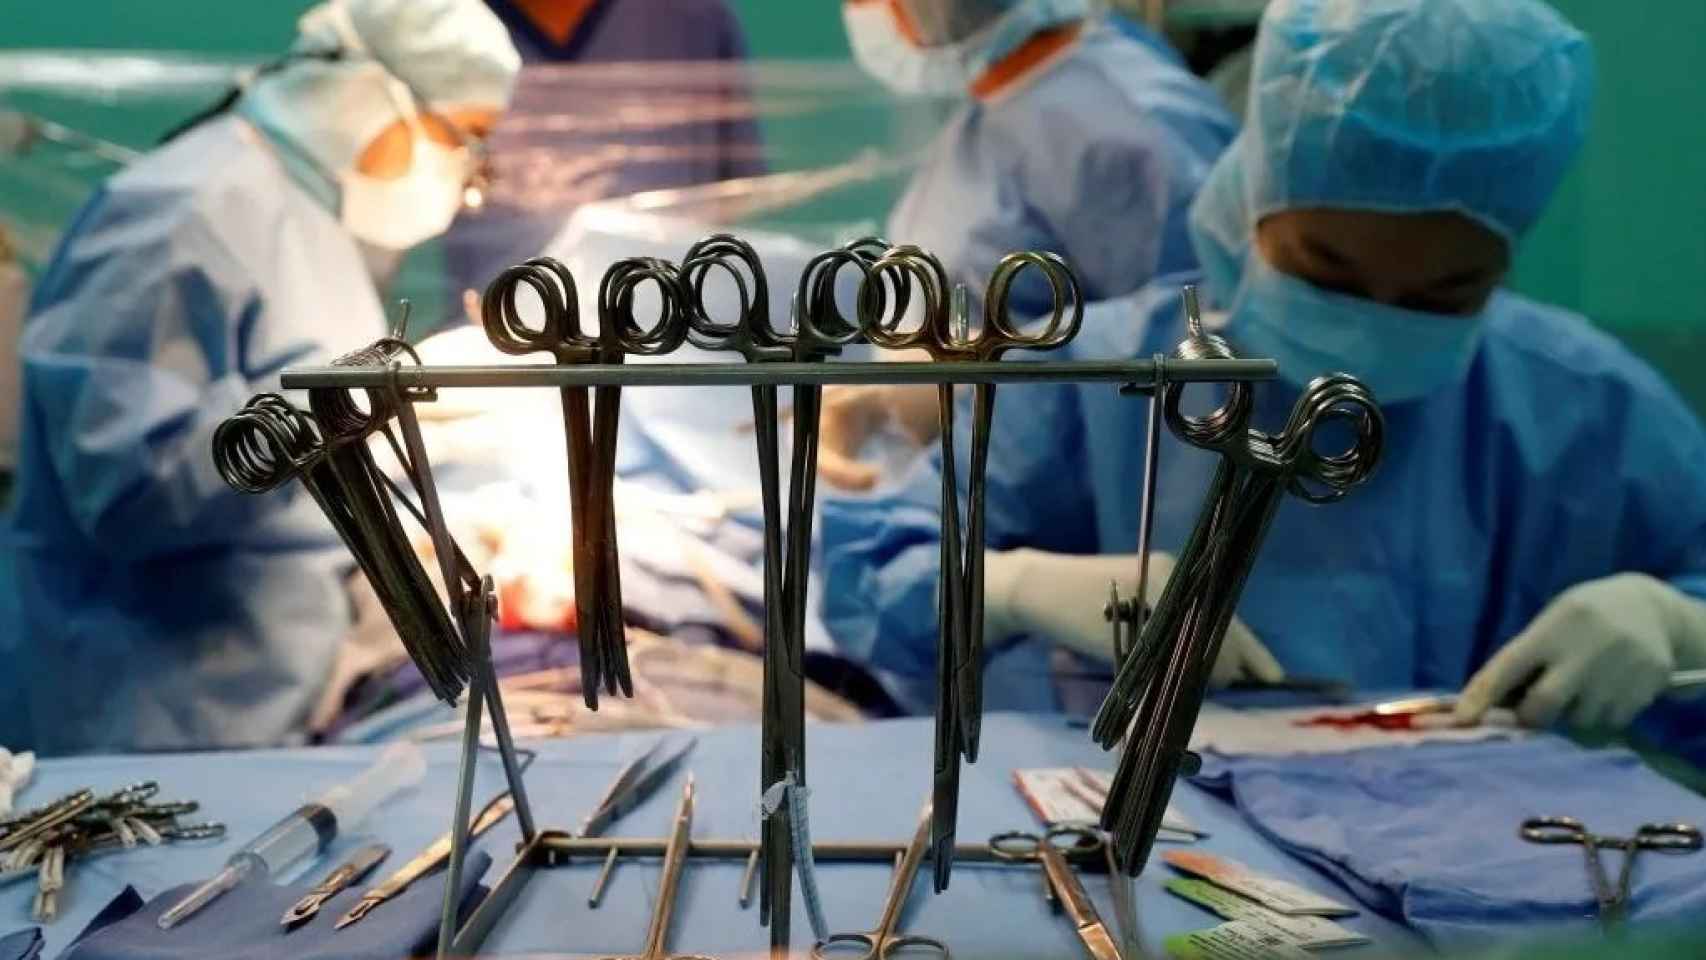 Cirujanos chinos realizan una operación quirúrgica.